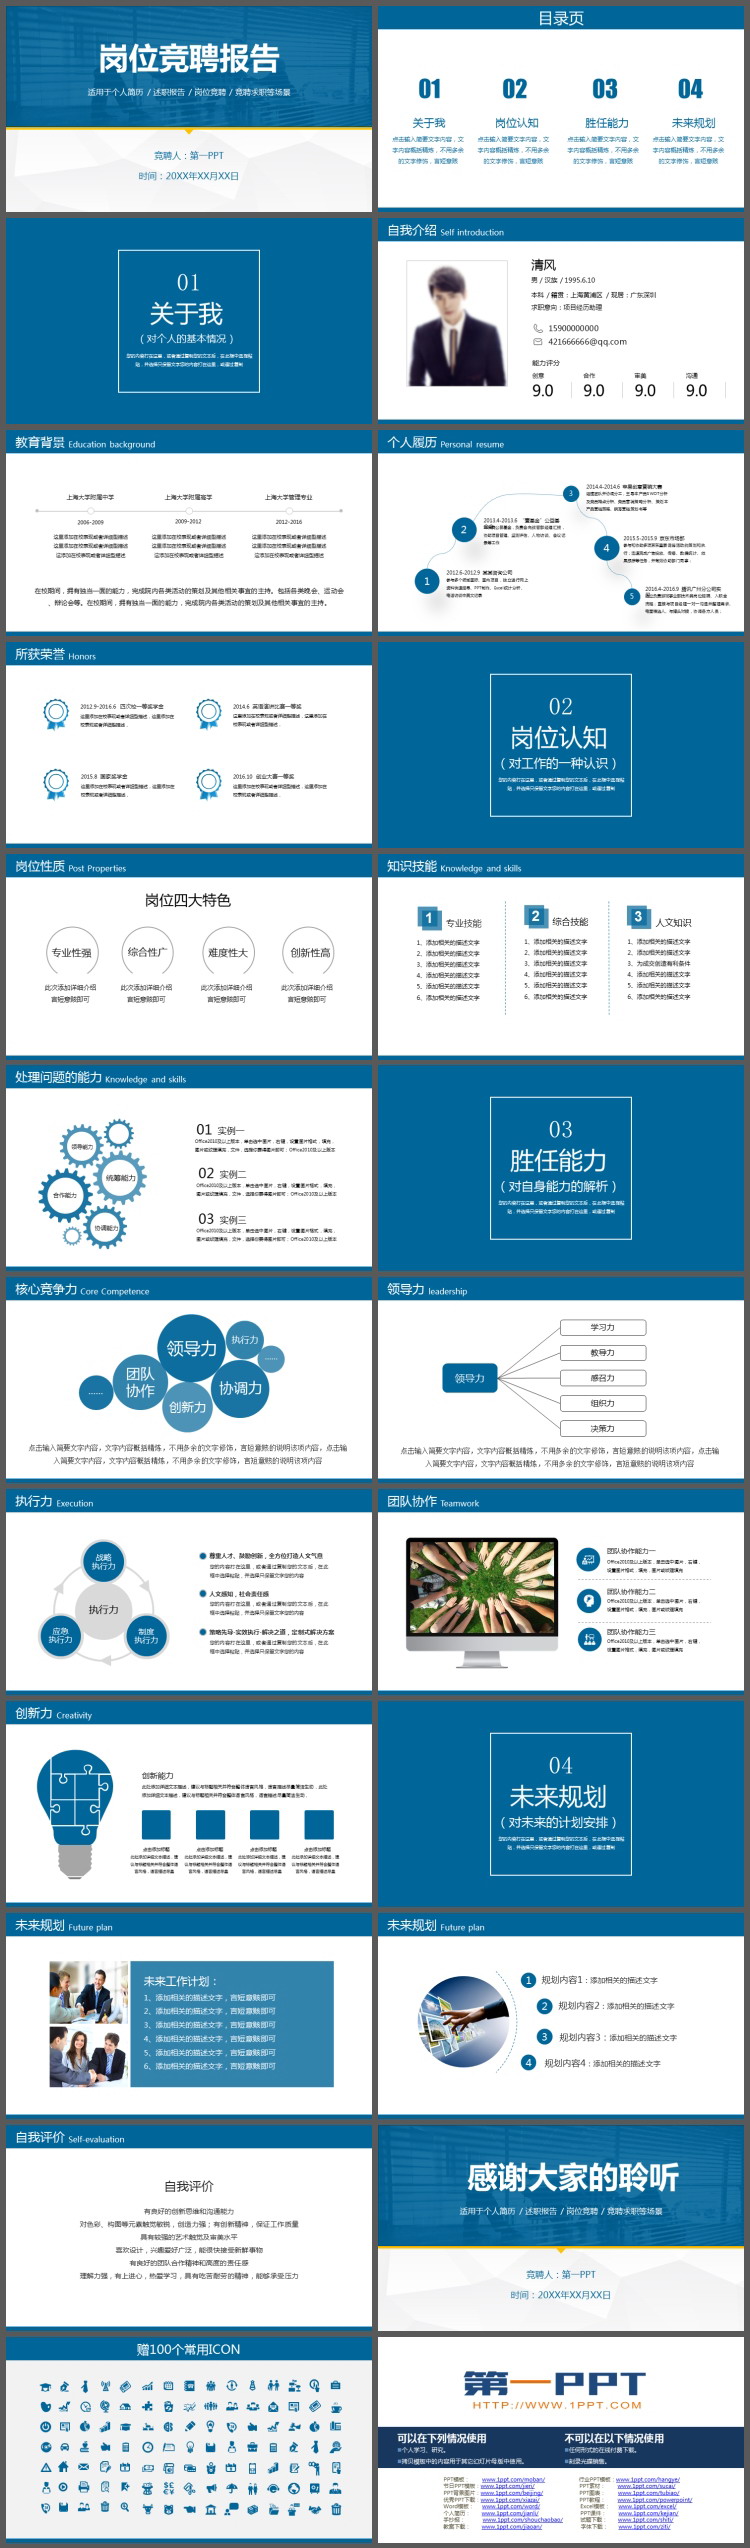 powerpoint模板内容页,由21张蓝色灰色配色的幻灯片图